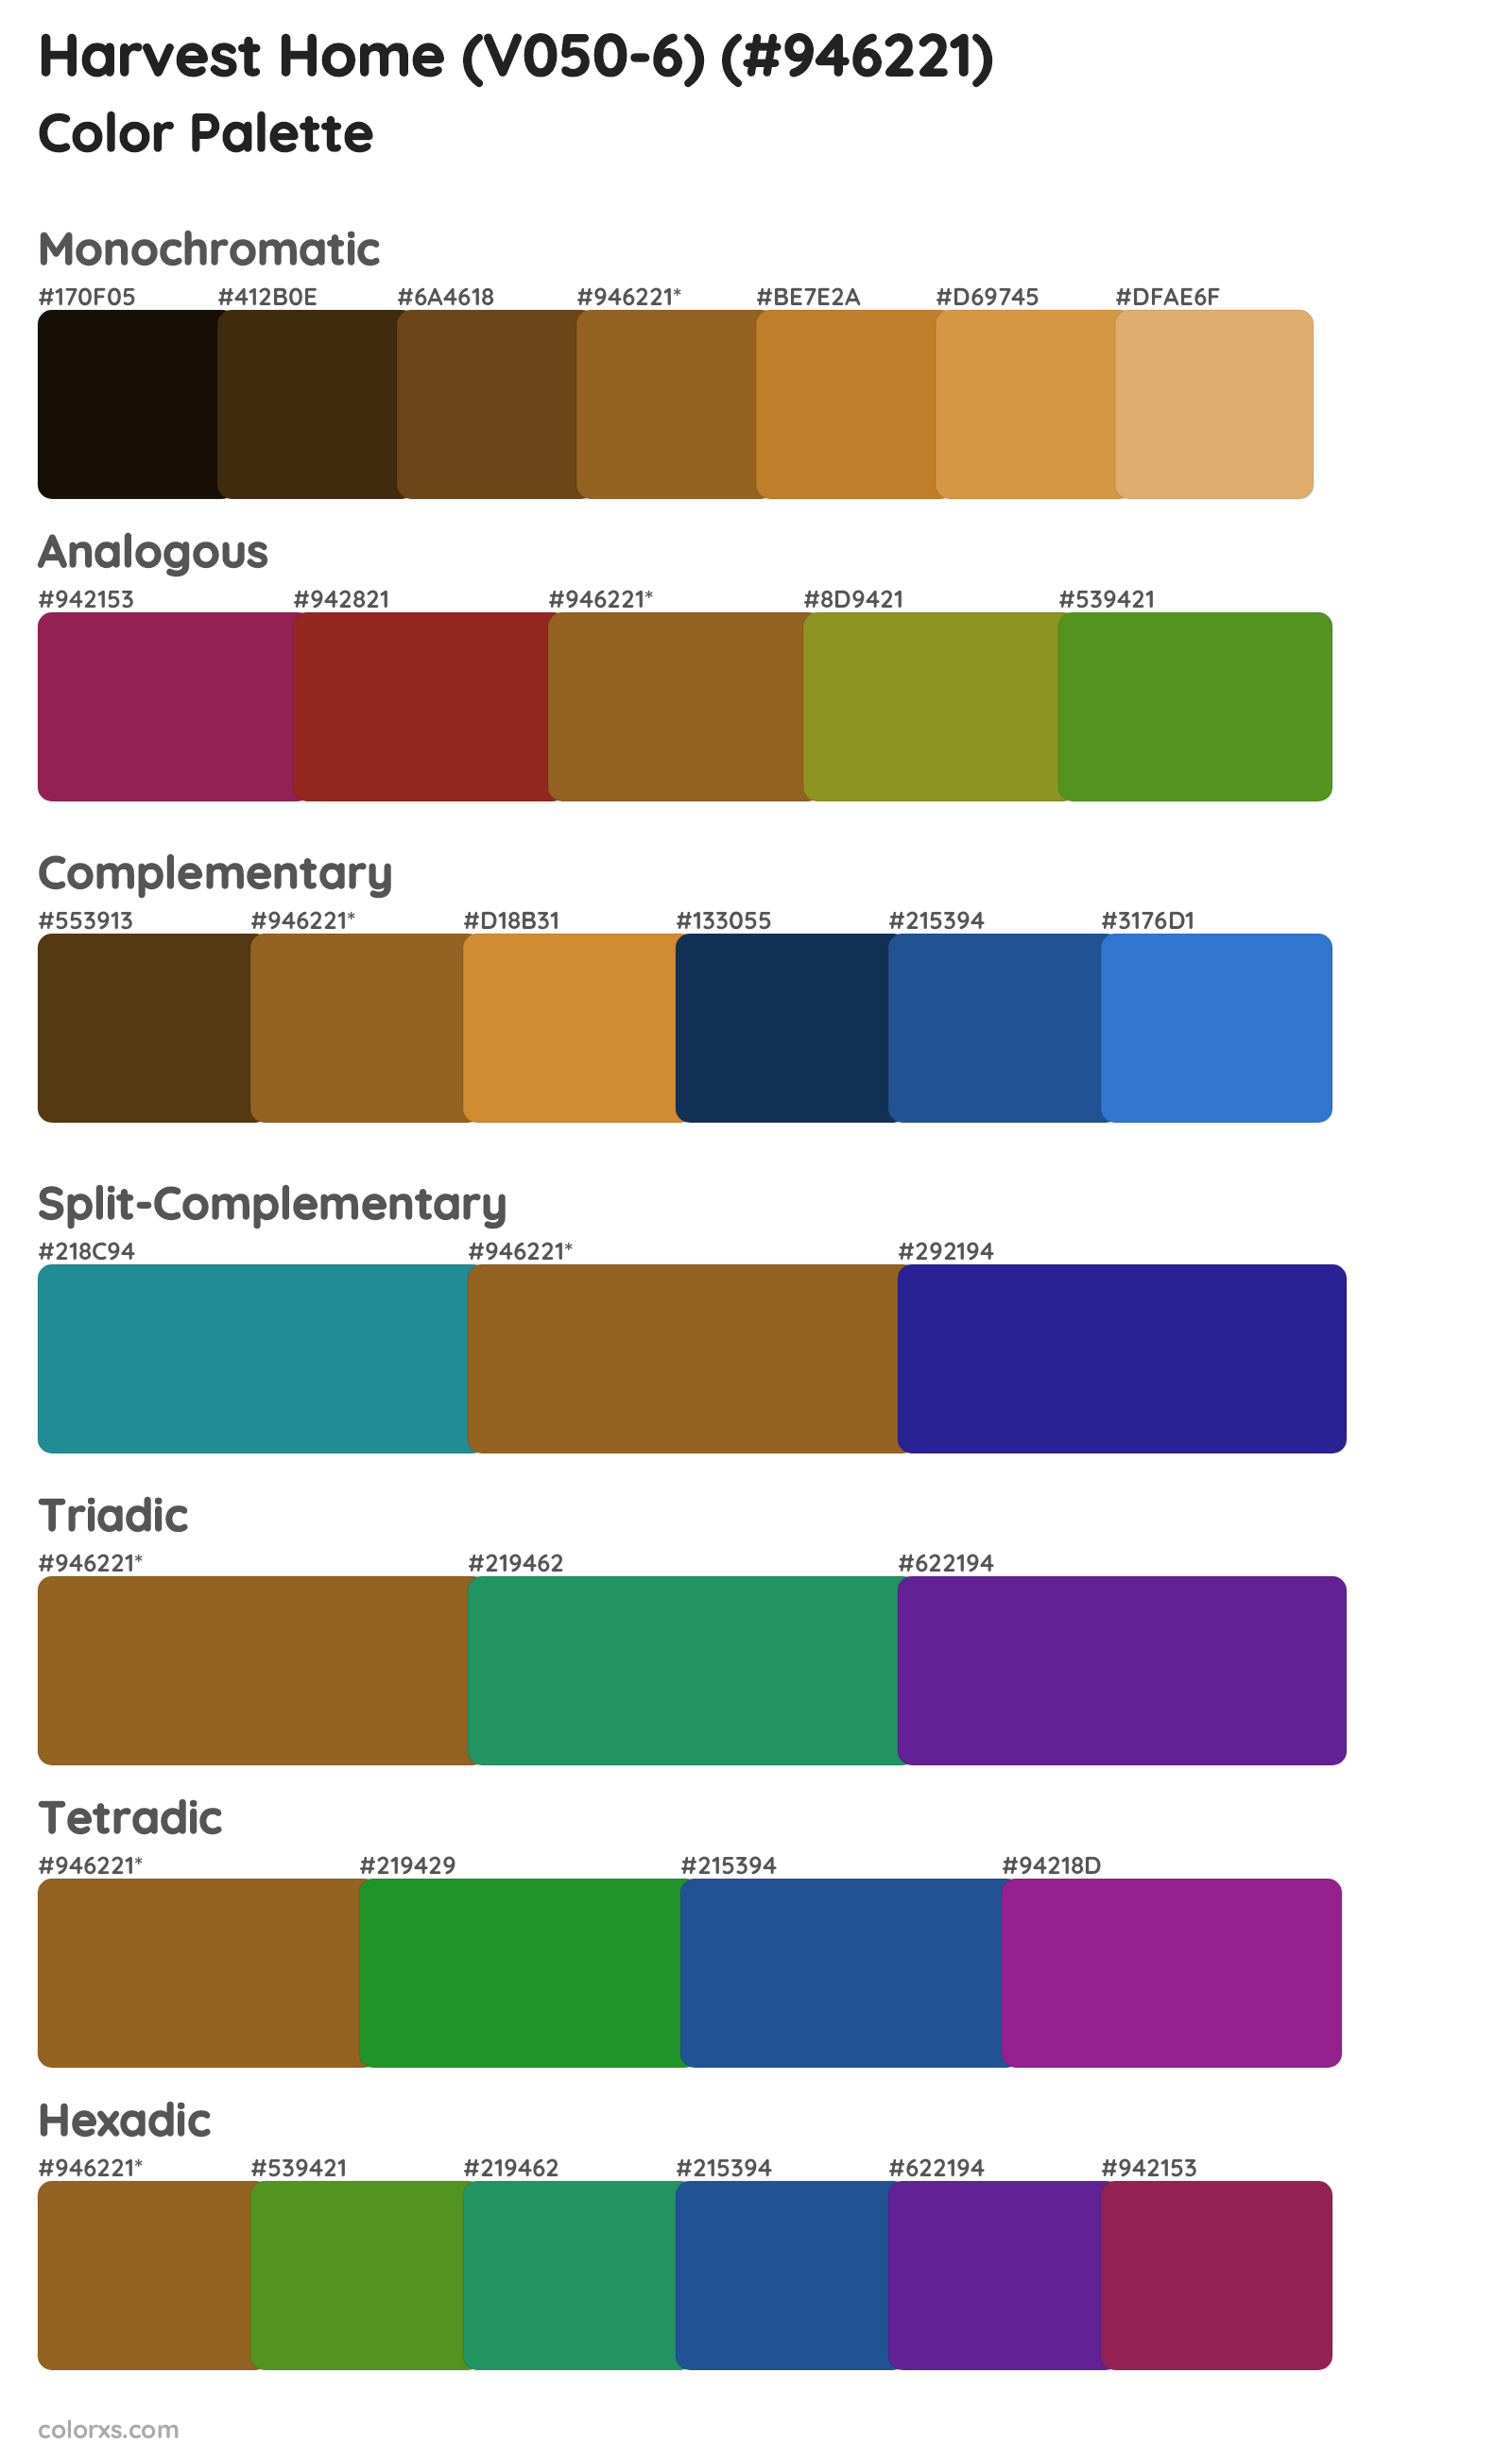 Harvest Home (V050-6) Color Scheme Palettes